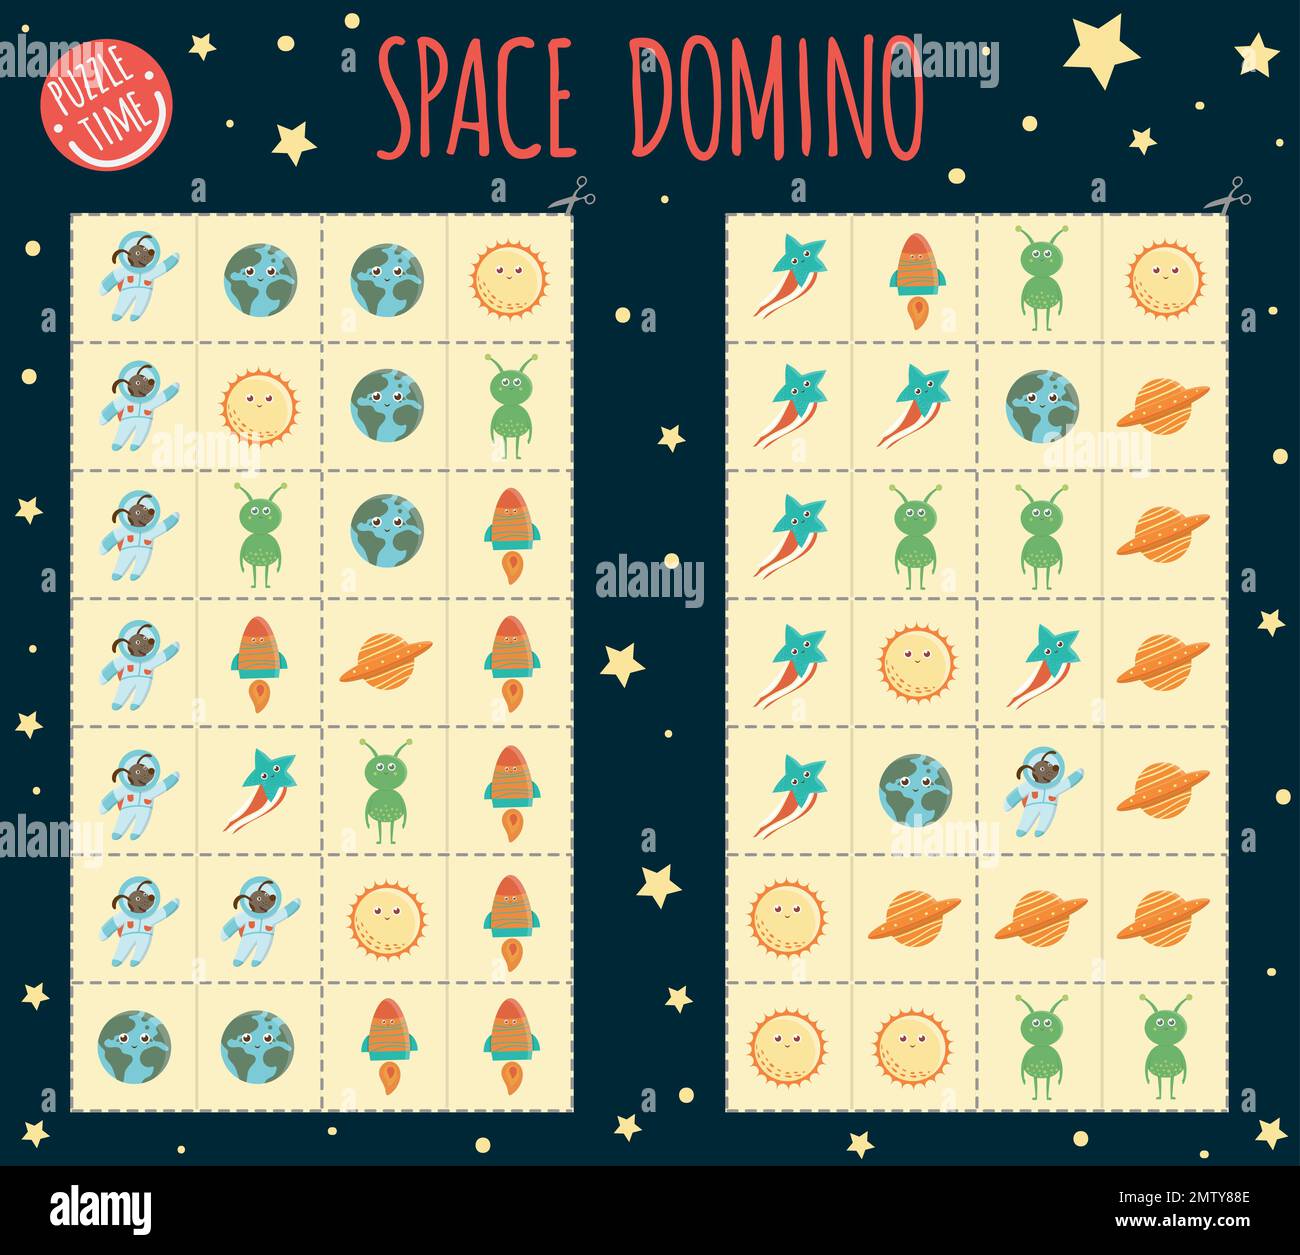 Weltraum-Domino für Kinder. Brettspiel mit Planet, Erde, Sonne, Rakete, Alien, UFO, Stern. Abgestimmte Aktivitäten für die Früherziehung Stock Vektor